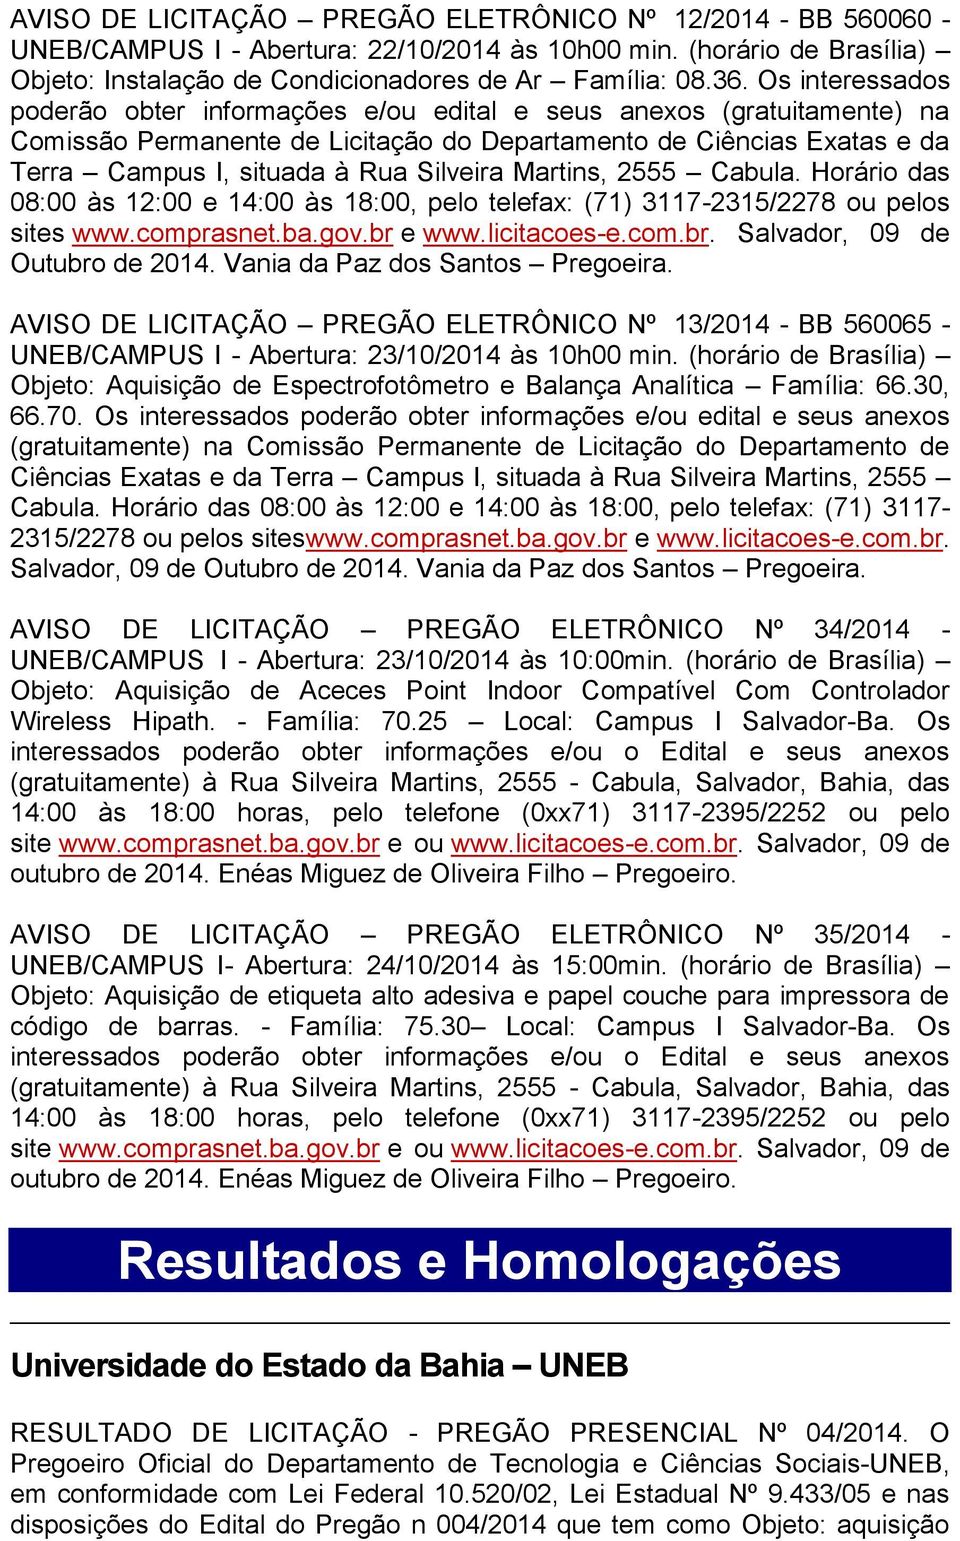 Martins, 2555 Cabula. Horário das 08:00 às 12:00 e 14:00 às 18:00, pelo telefax: (71) 3117-2315/2278 ou pelos sites www.comprasnet.ba.gov.br e www.licitacoes-e.com.br. Salvador, 09 de Outubro de 2014.